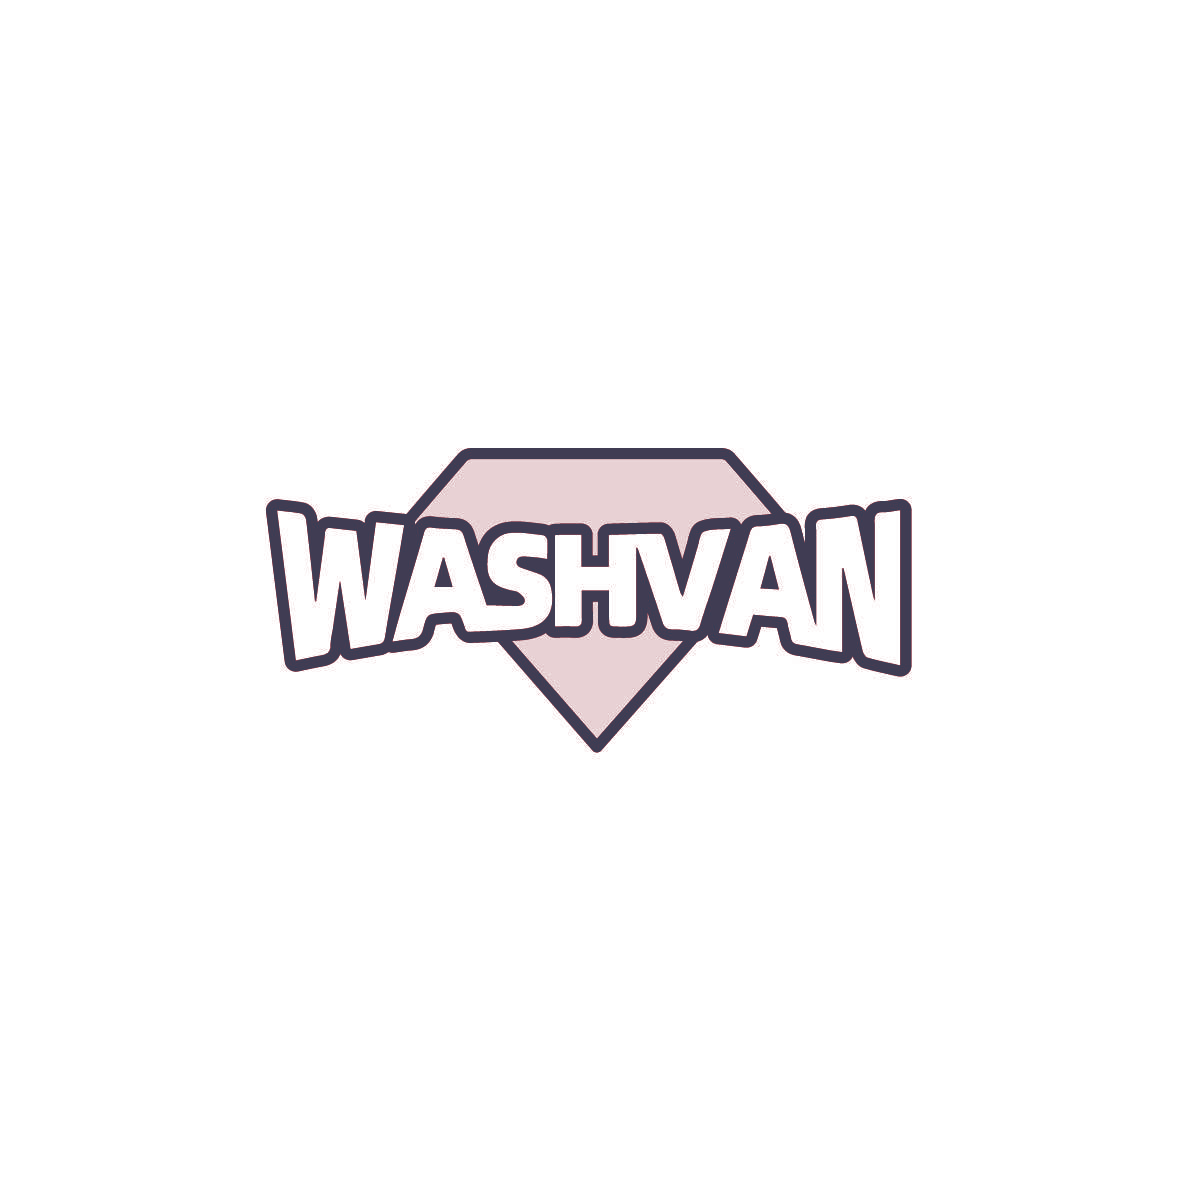 WASHVAN